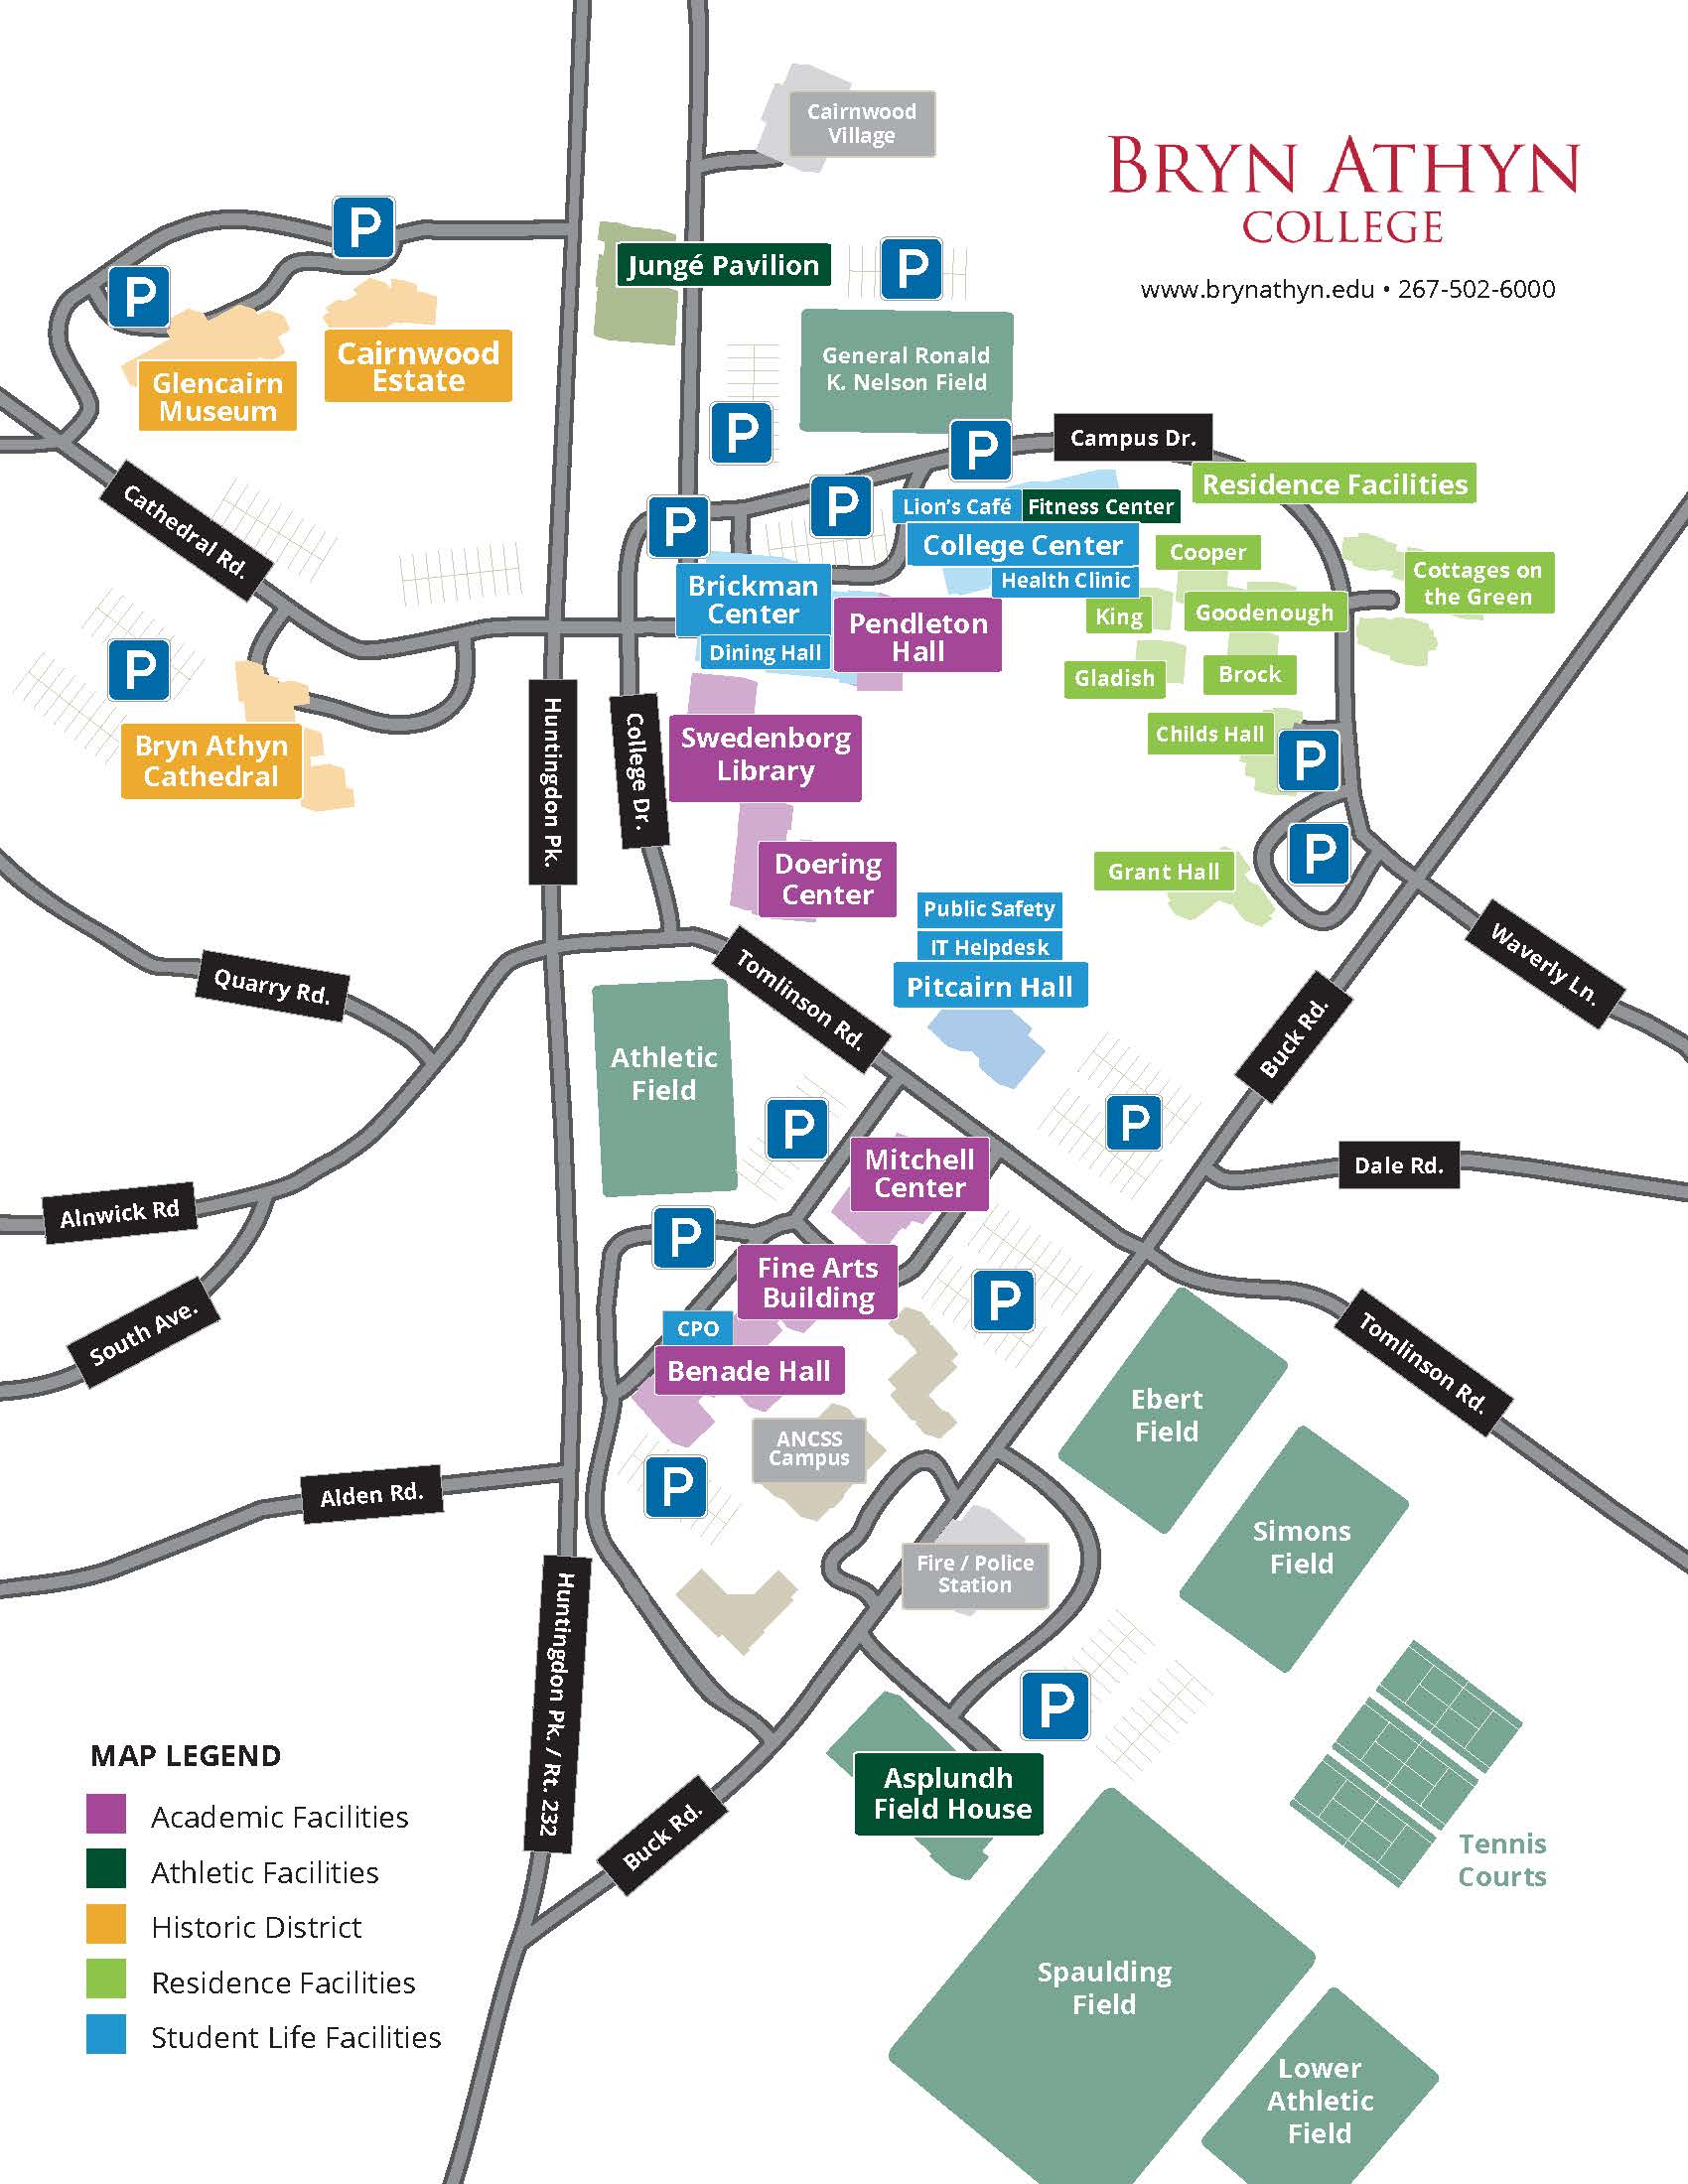 Campus map of Bryn Athyn College